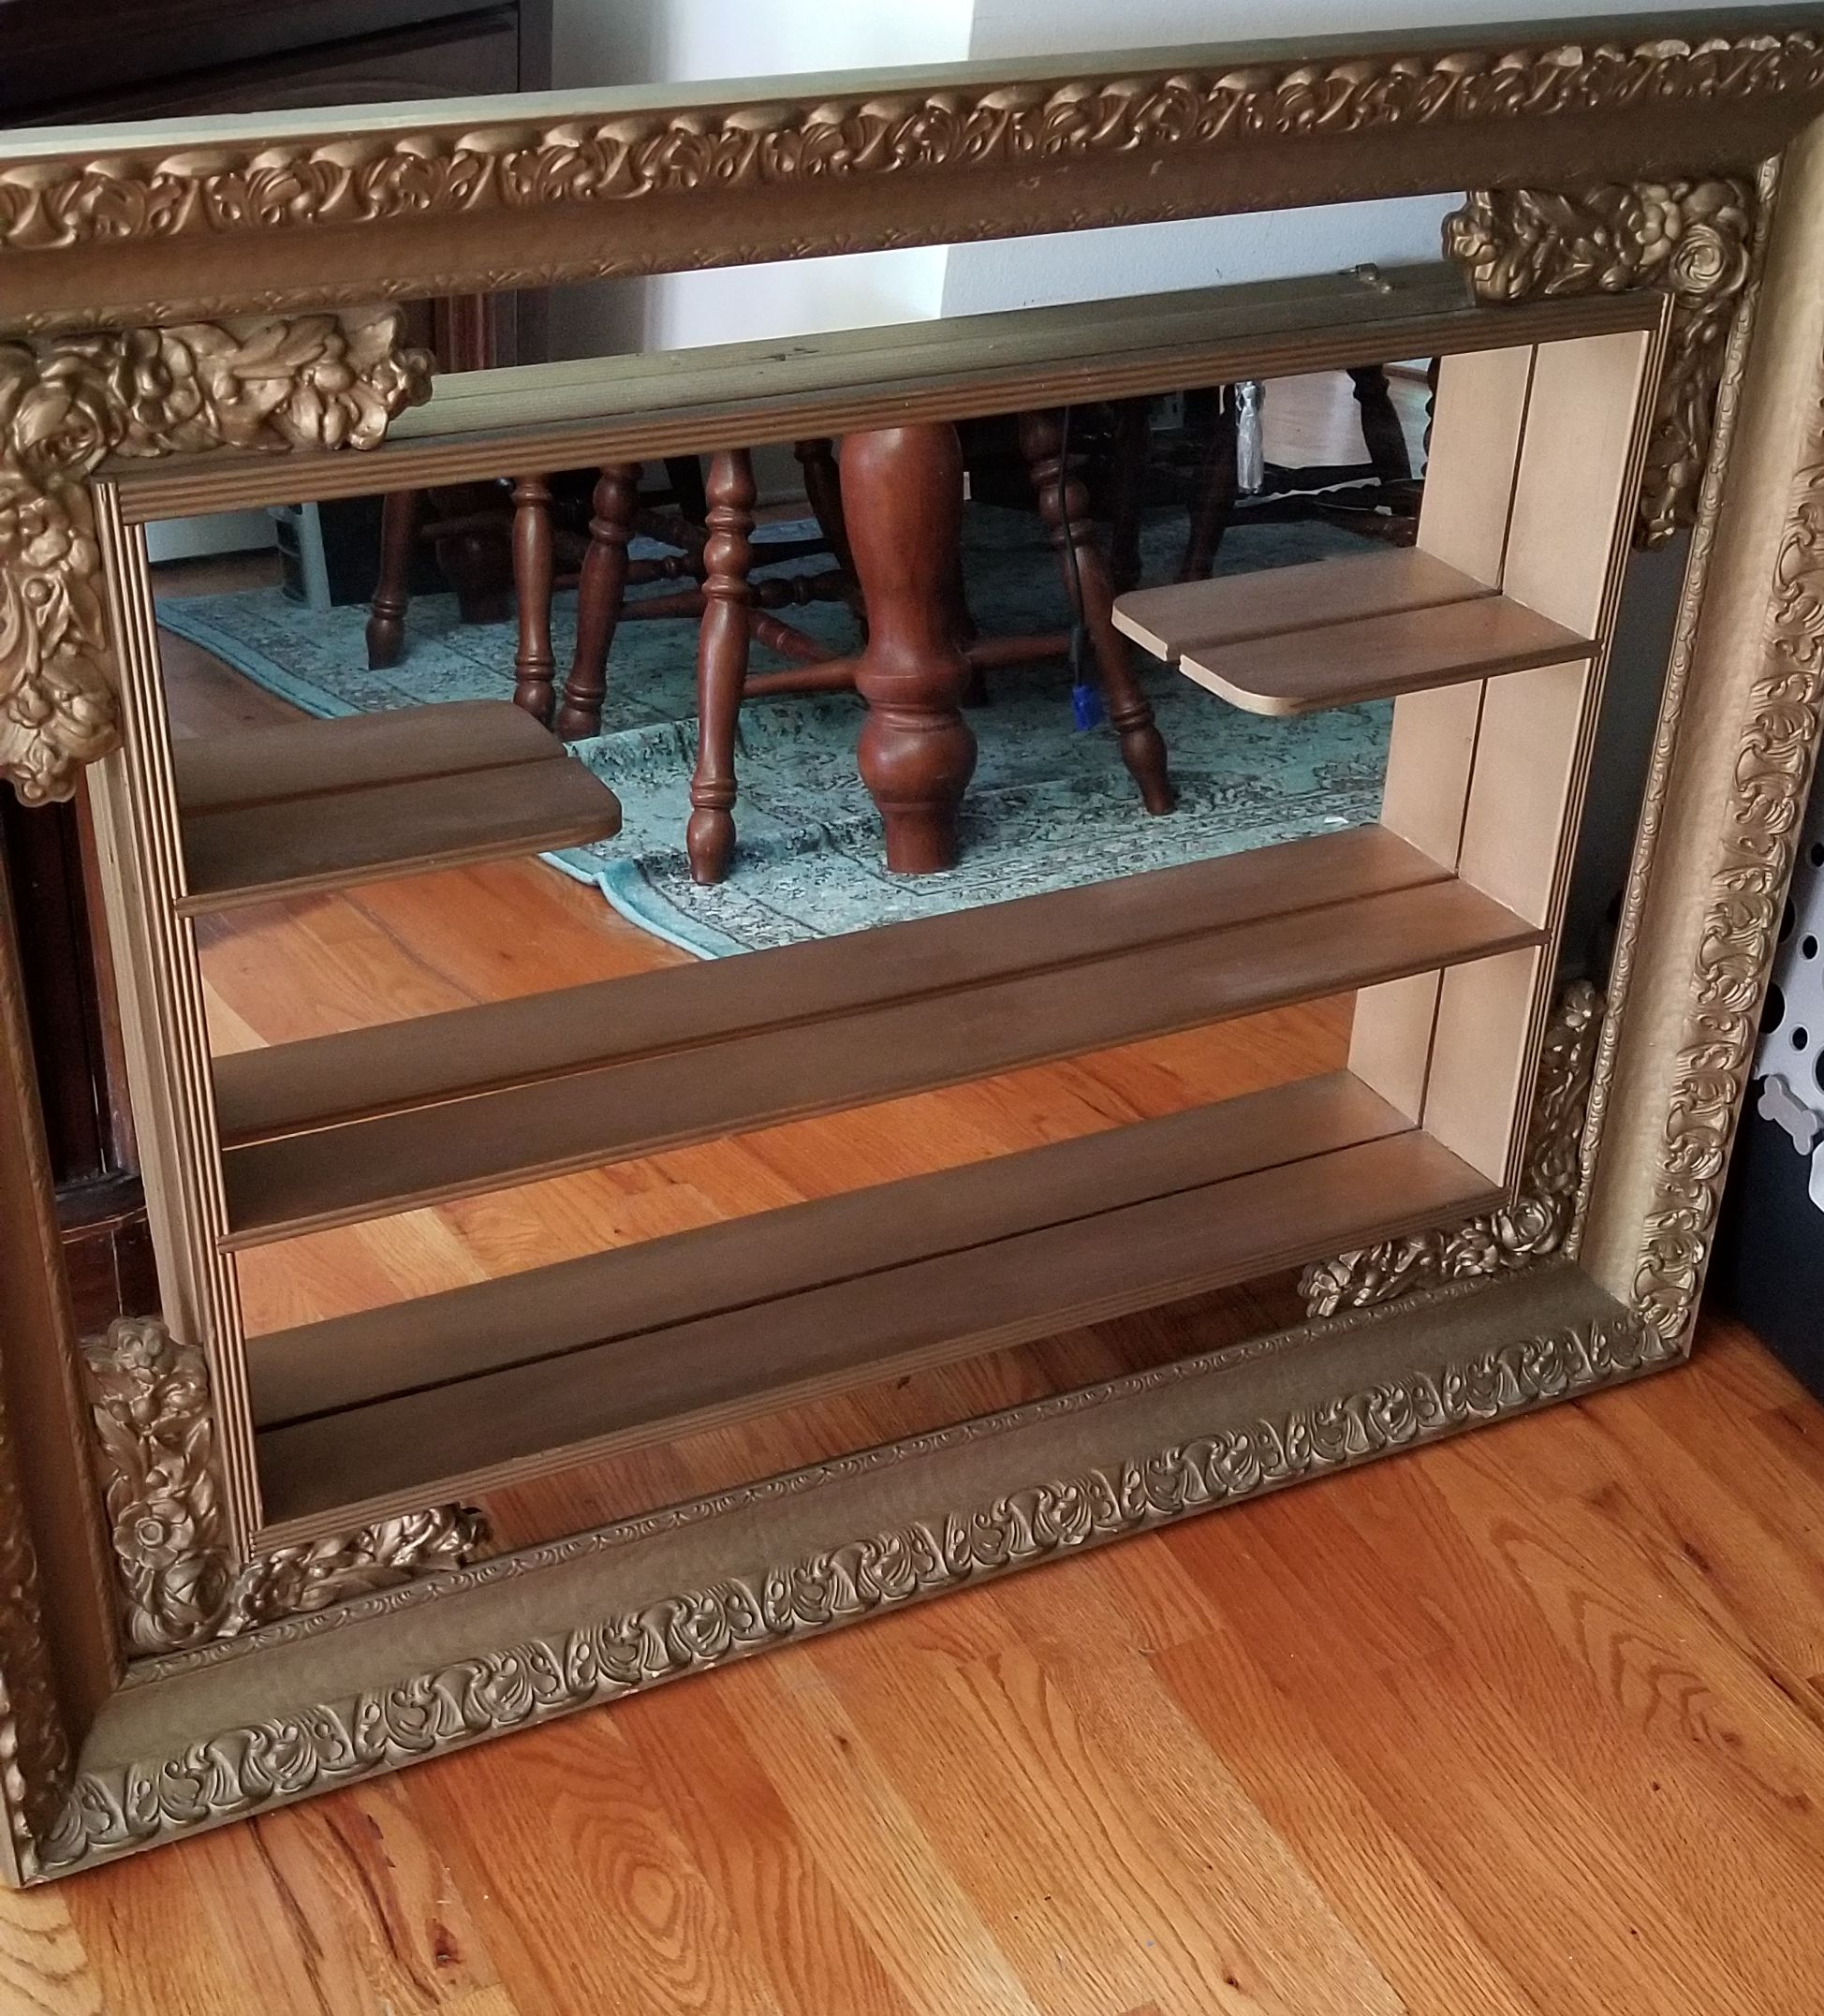 Framed antique mirror hanging